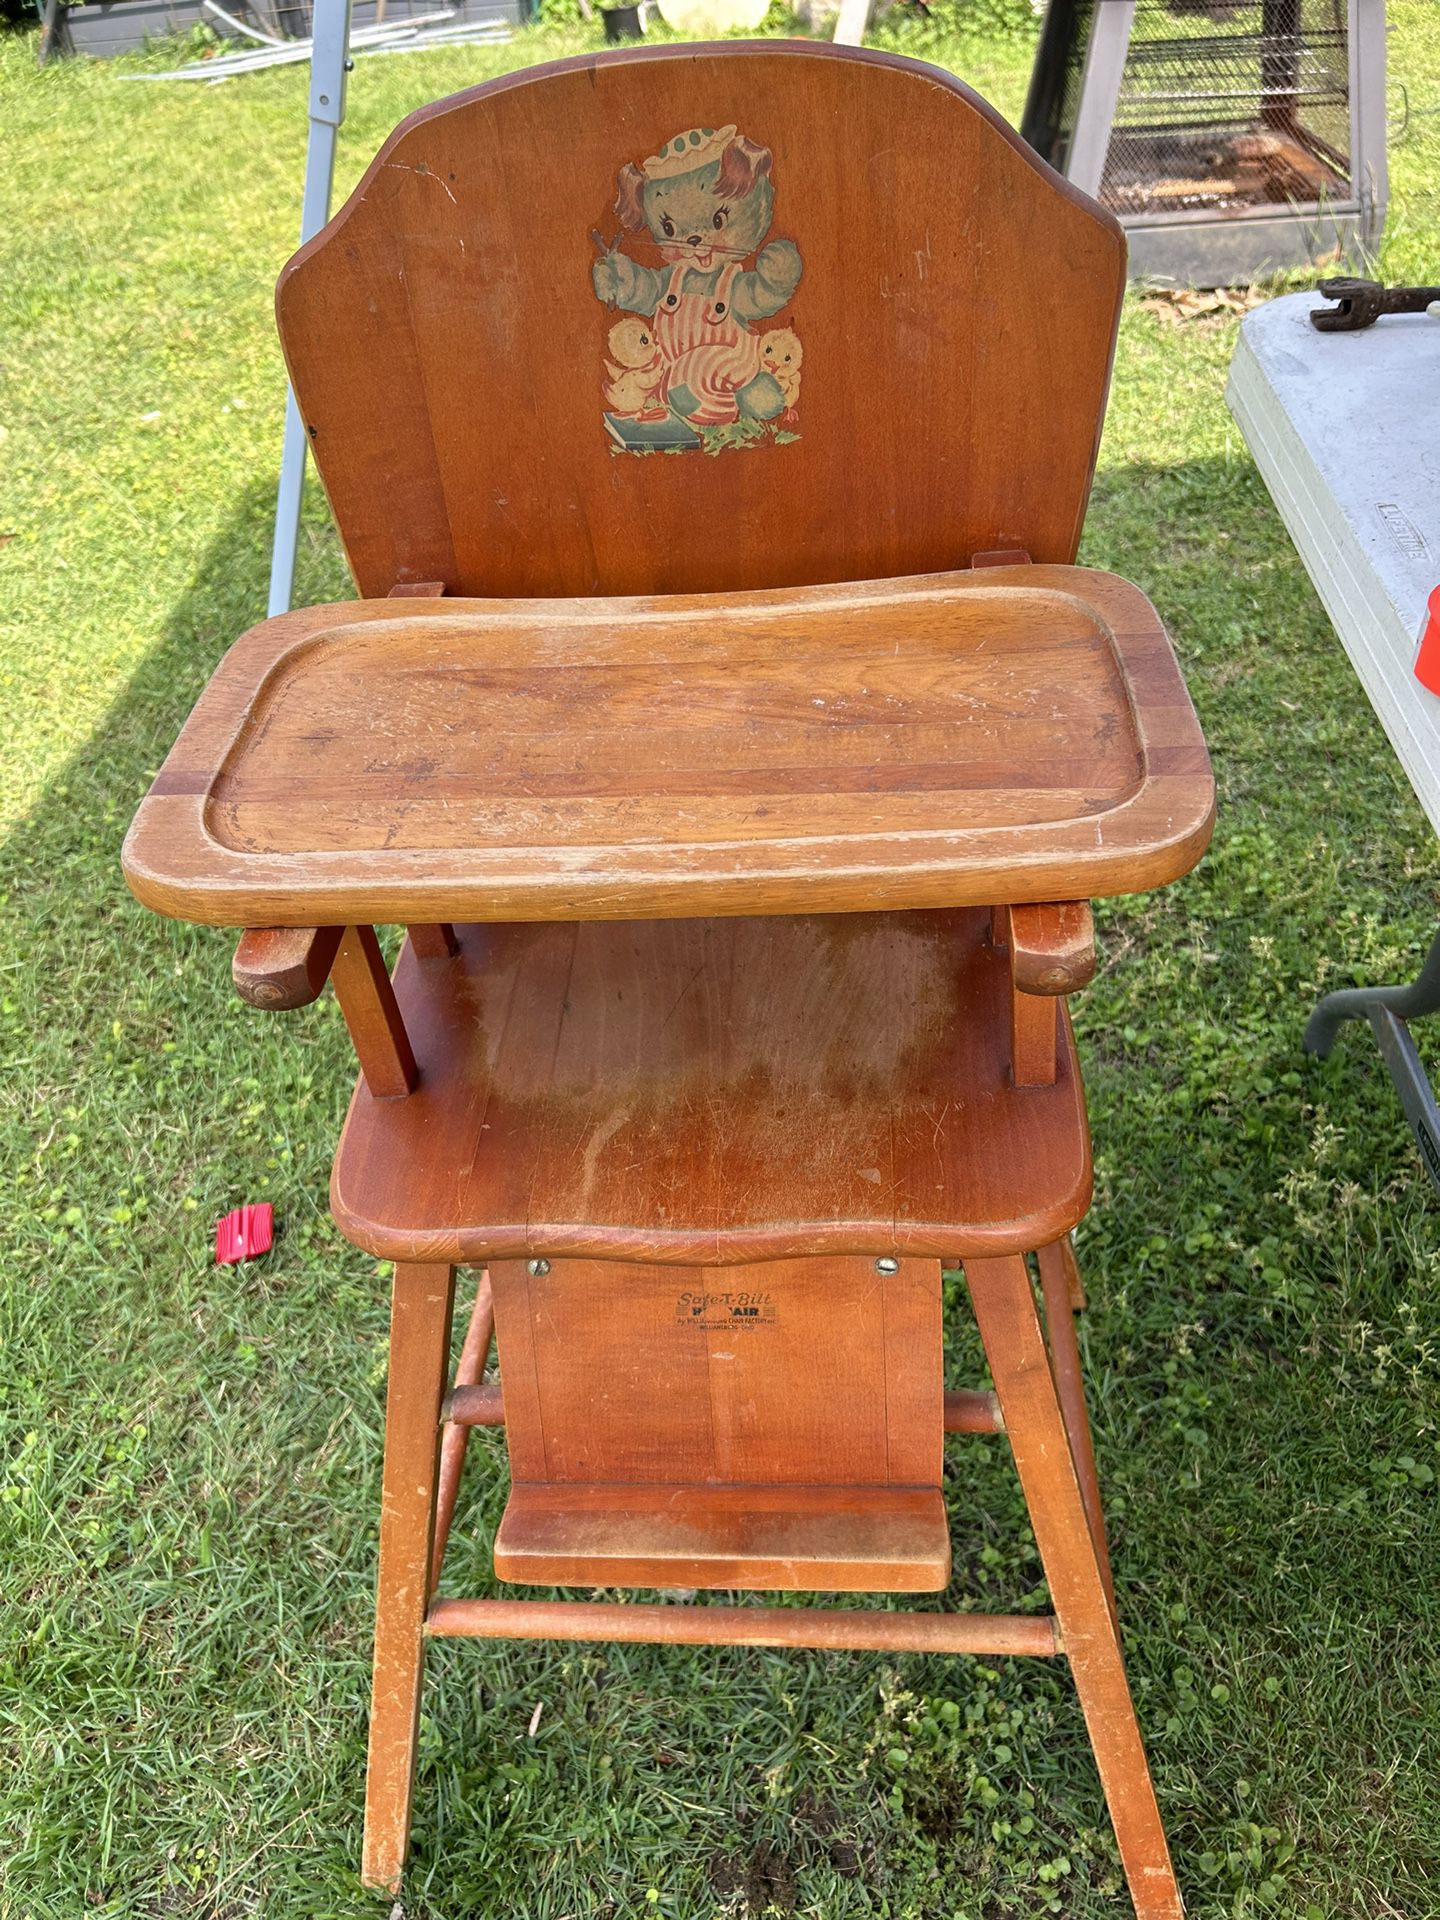 safe-t -bilt vintage hi chair